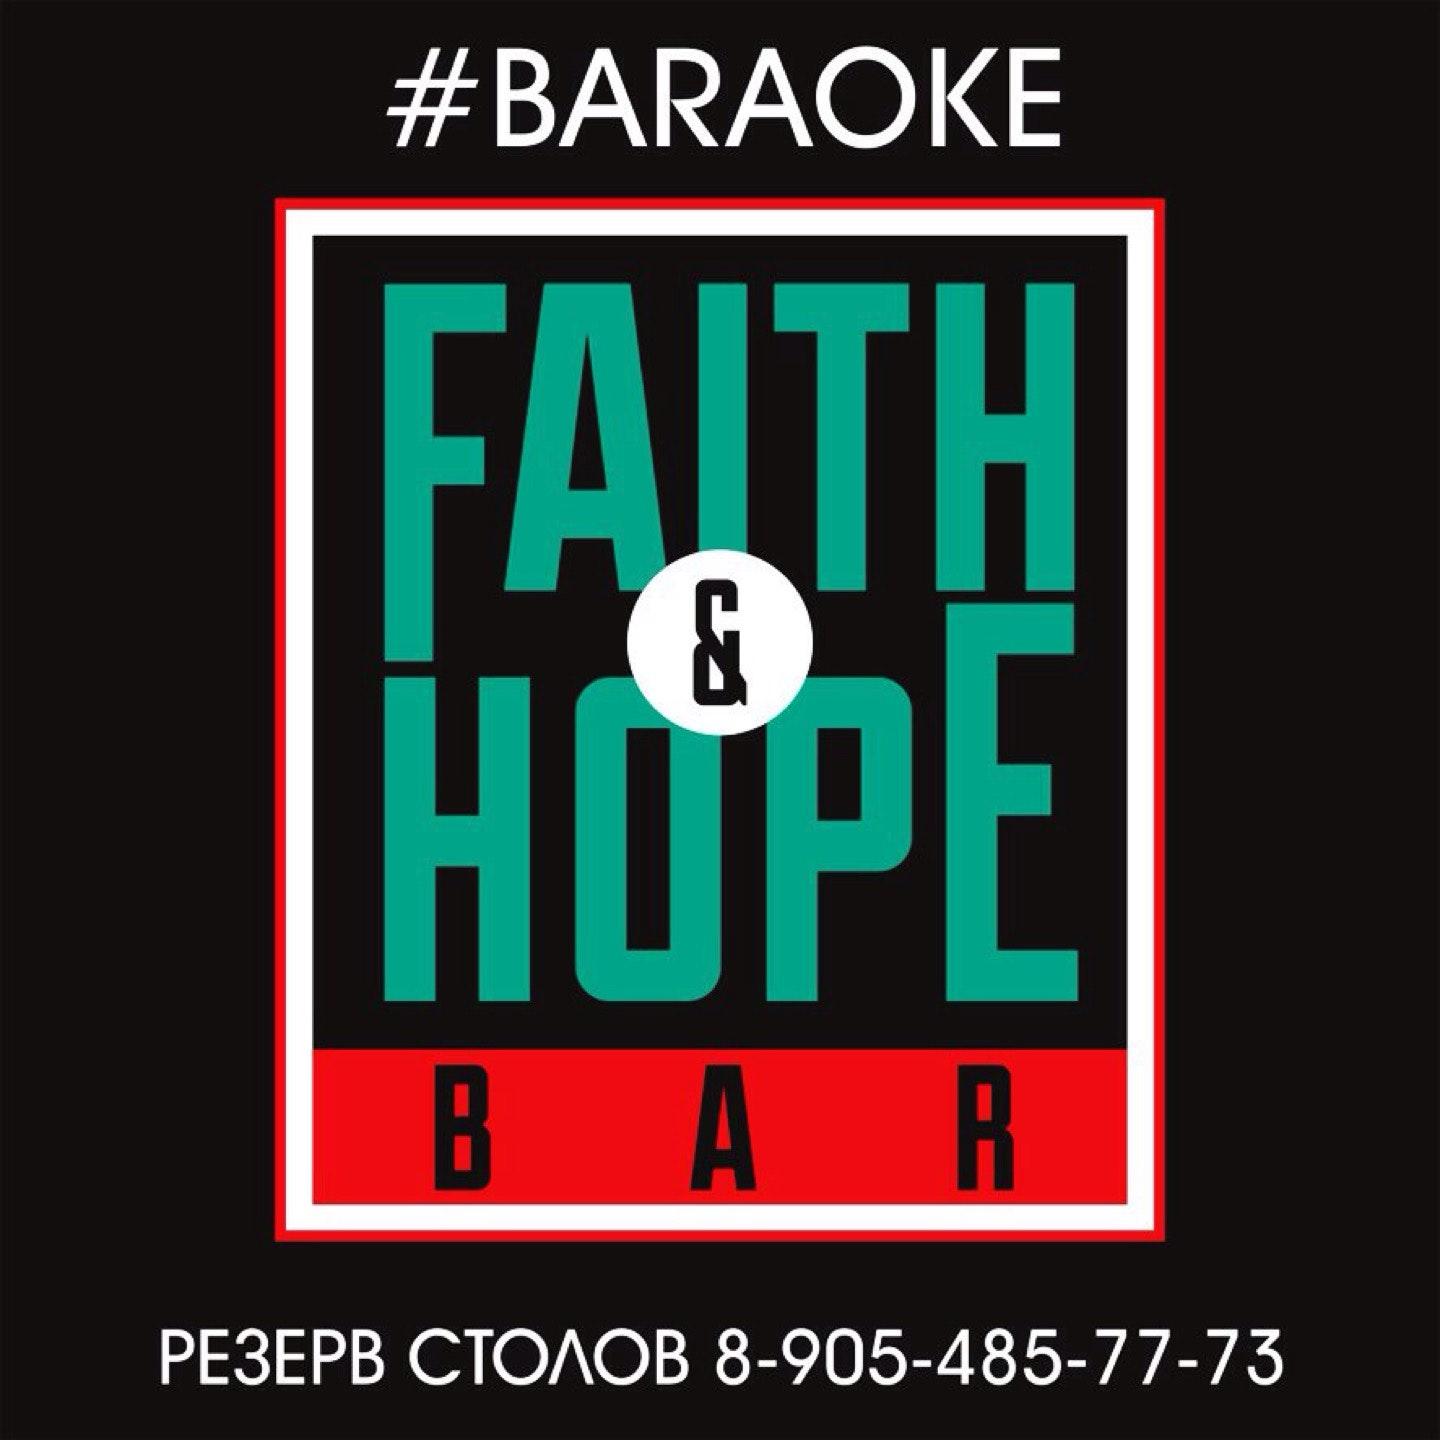 FAITH & HOPE BAR